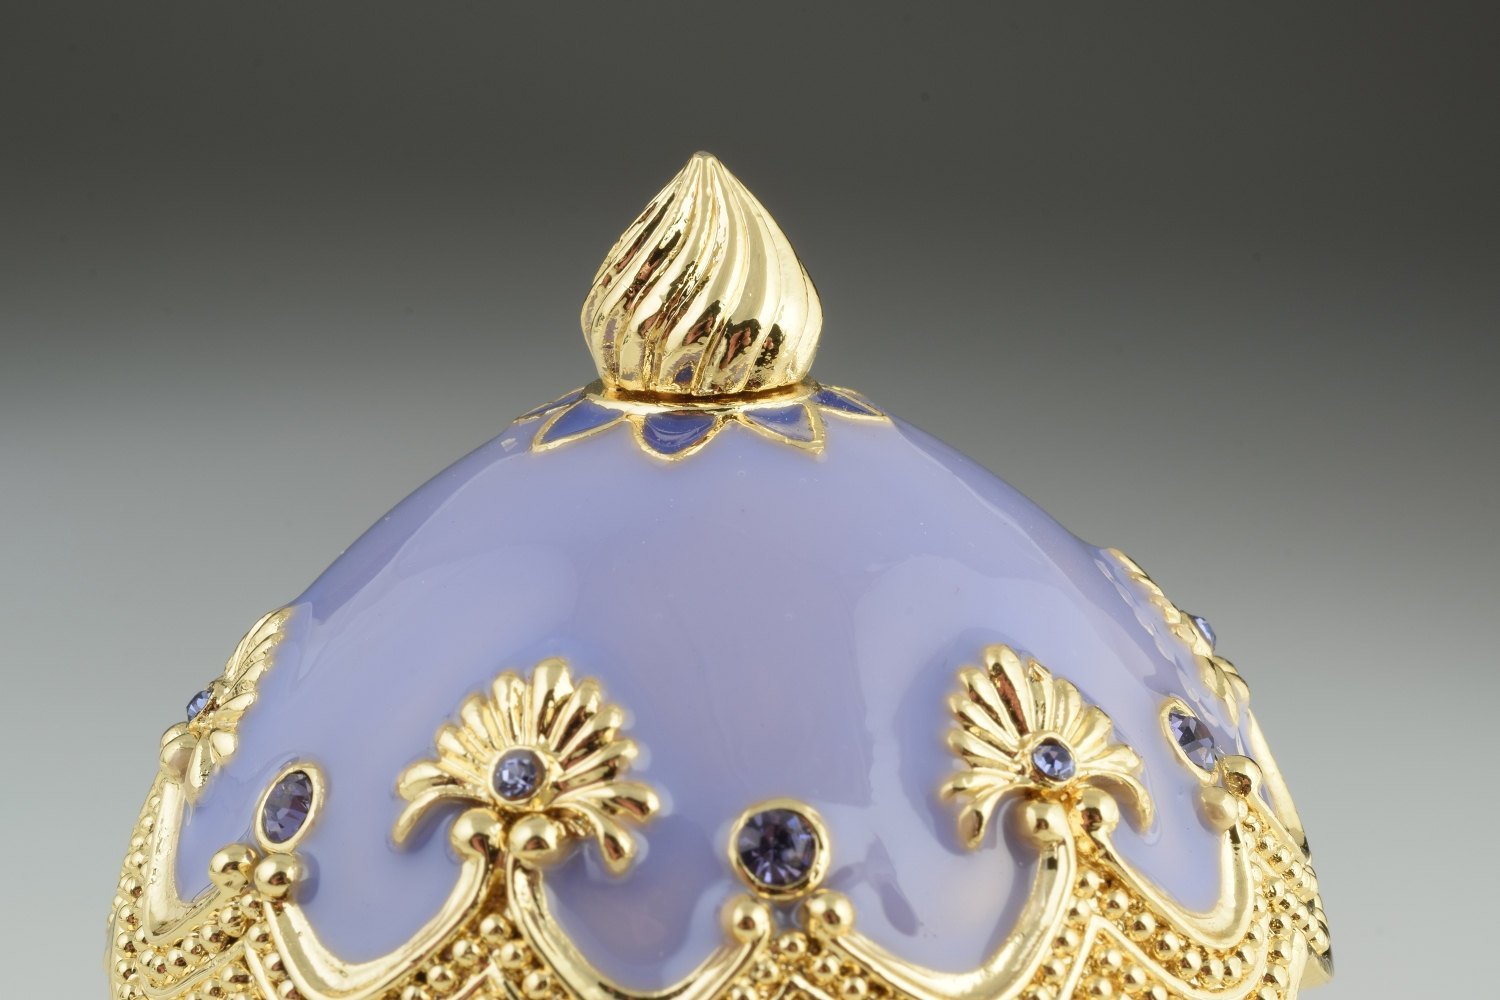 Keren Kopal Purple Carousel Egg with White Royal Horses  121.50